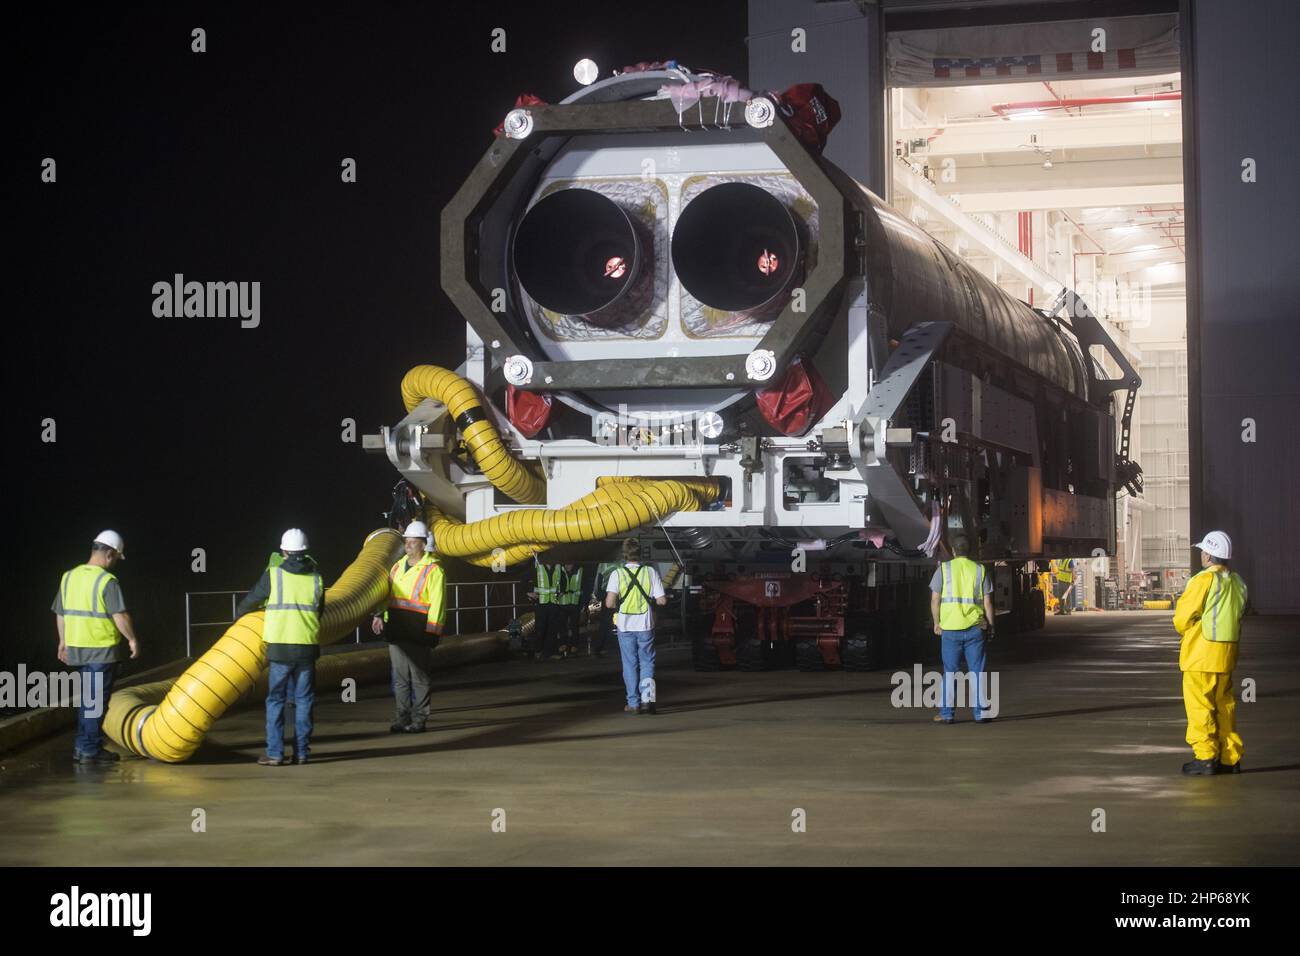 Eine Orbital ATK-Rakete wird beim Start von Pad-0A in der Wallops Flight Facility am Donnerstag, den 17. Mai 2018 in Wallops Island, VA, gesehen. Die Antares wird eine Cygnus-Raumsonde auf einer Frachterückführungsmission zur Internationalen Raumstation starten. Stockfoto